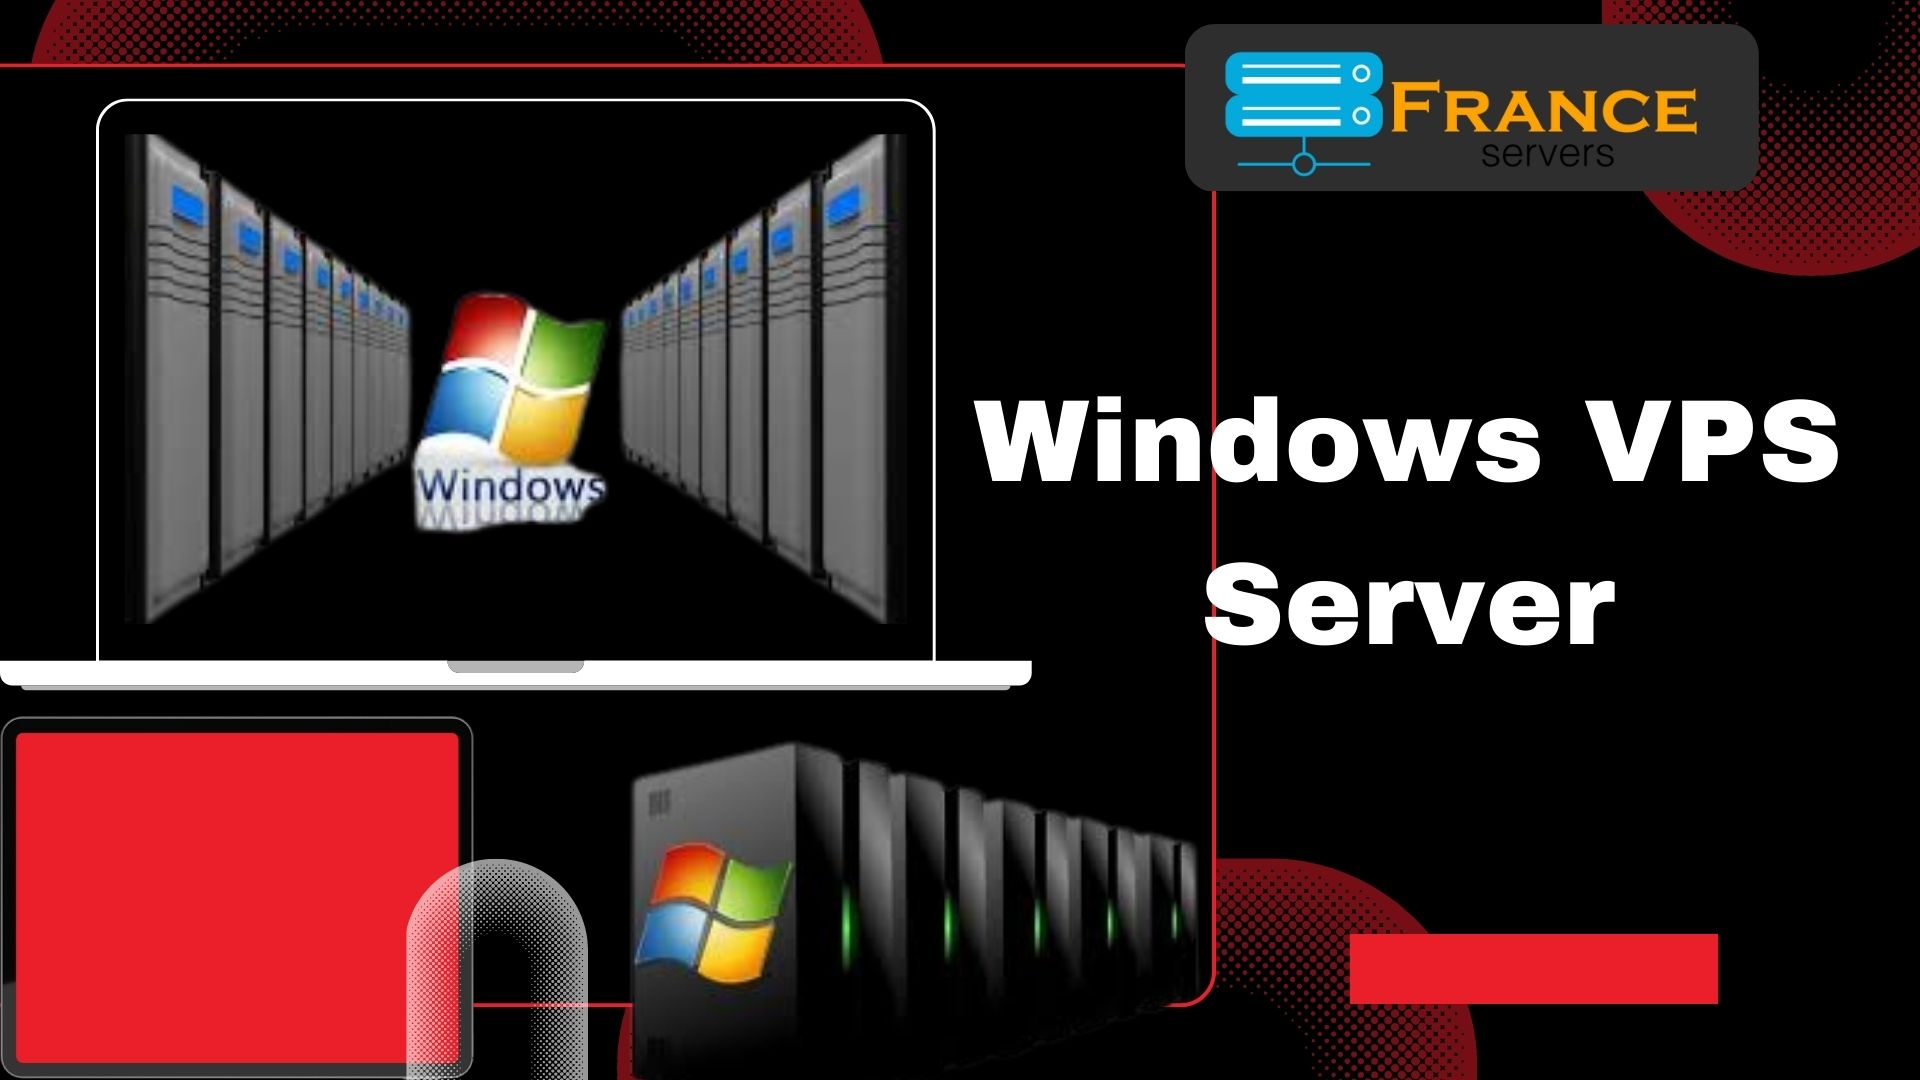 Windows VPS Server: An Ideal Hosting Platform for Online Business